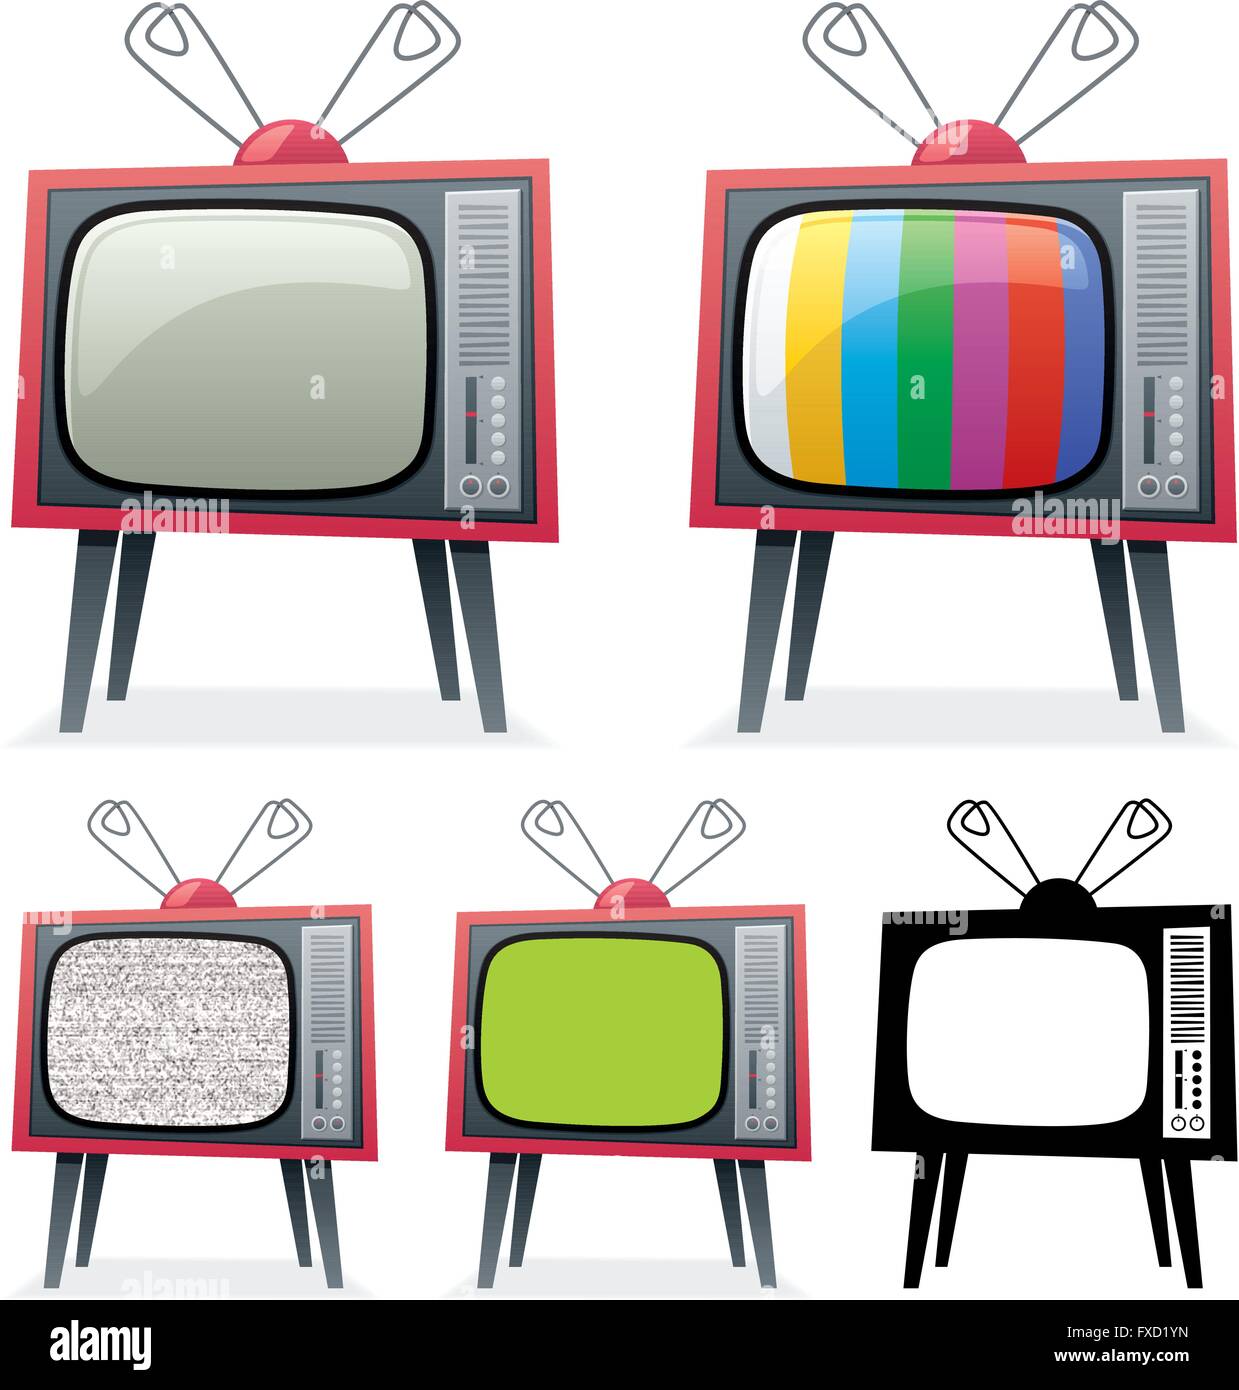 ANTENA TV BASICA PARA INTERIOR TELEVISIÓN ANALÓGICA CABLE SEÑAL